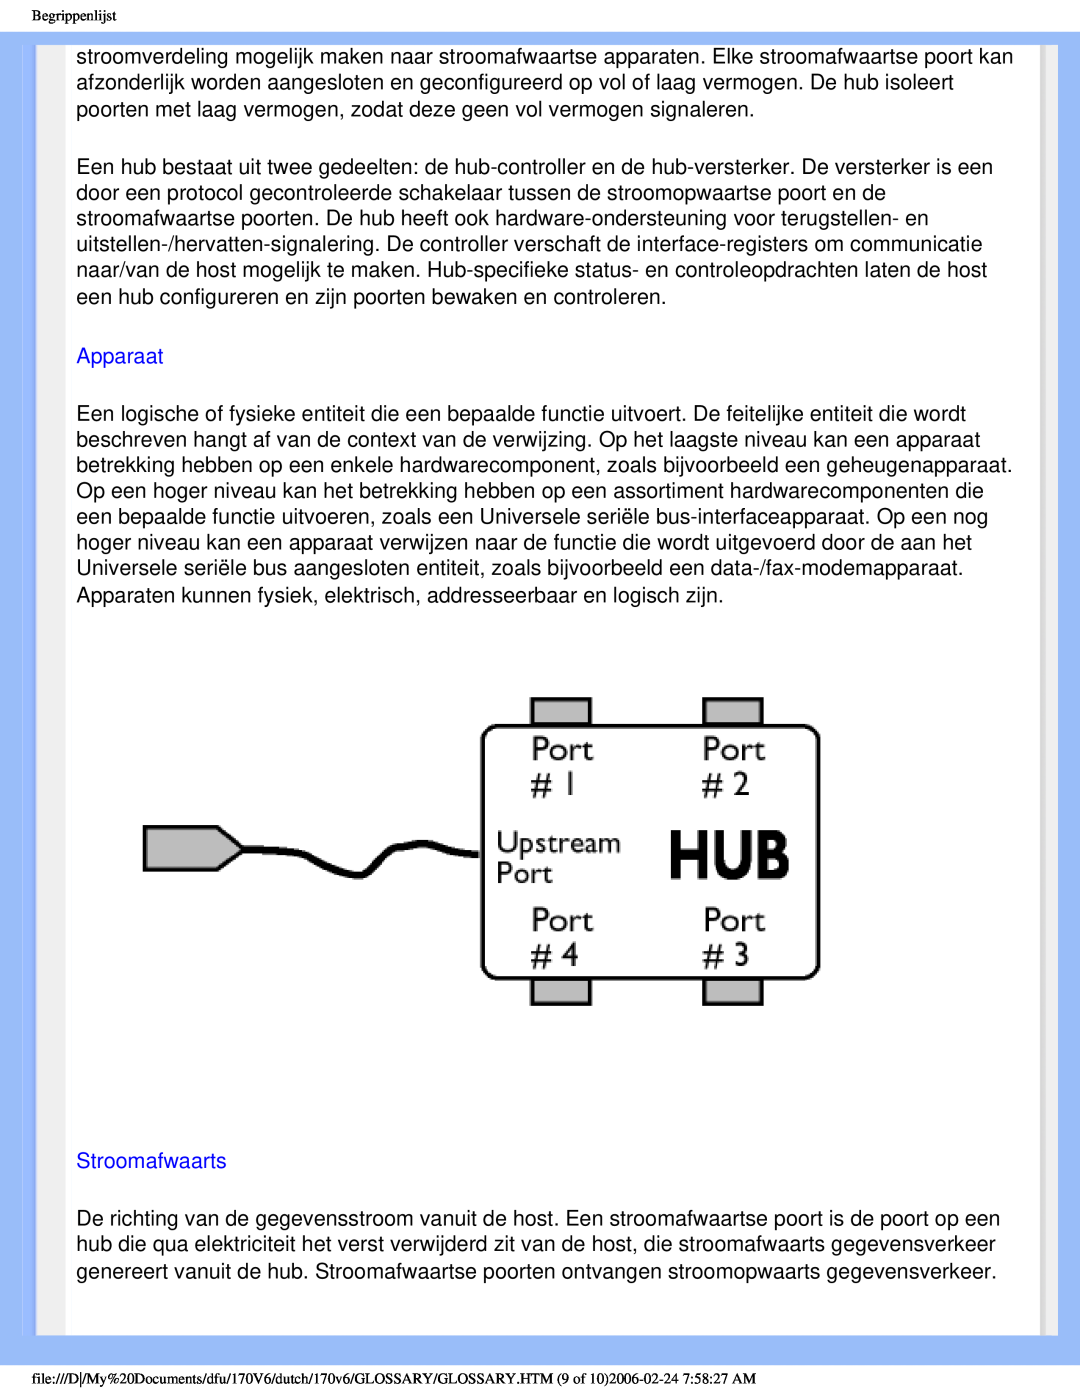 Philips 170V6 user manual Apparaat, Stroomafwaarts, Begrippenlijst 